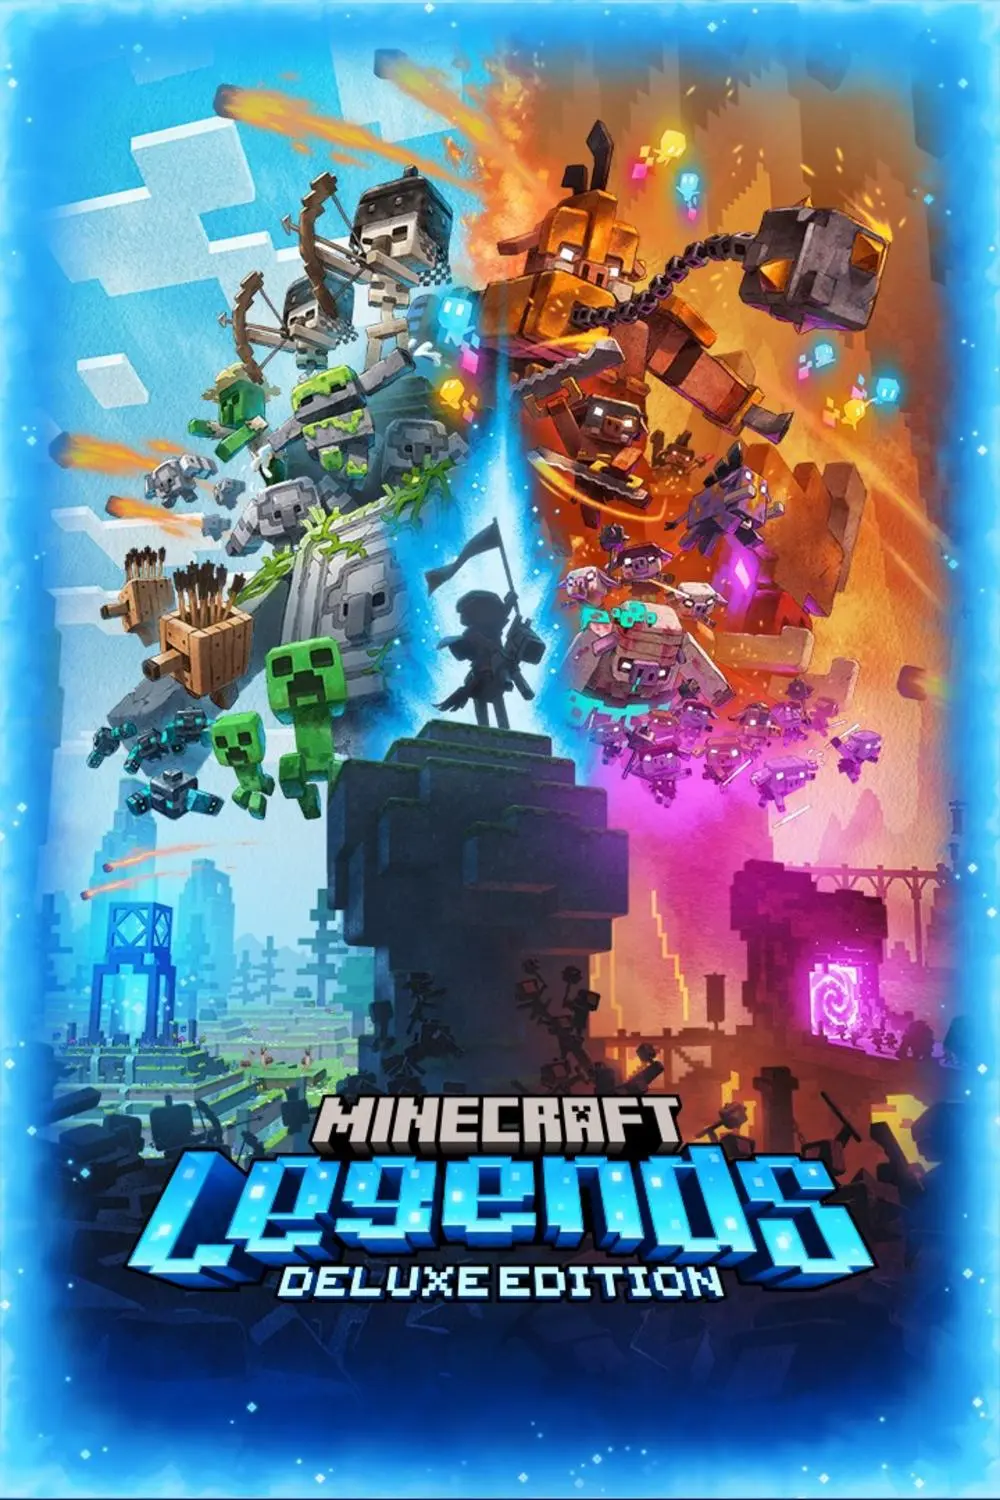 Minecraft Legends - Produto Digital